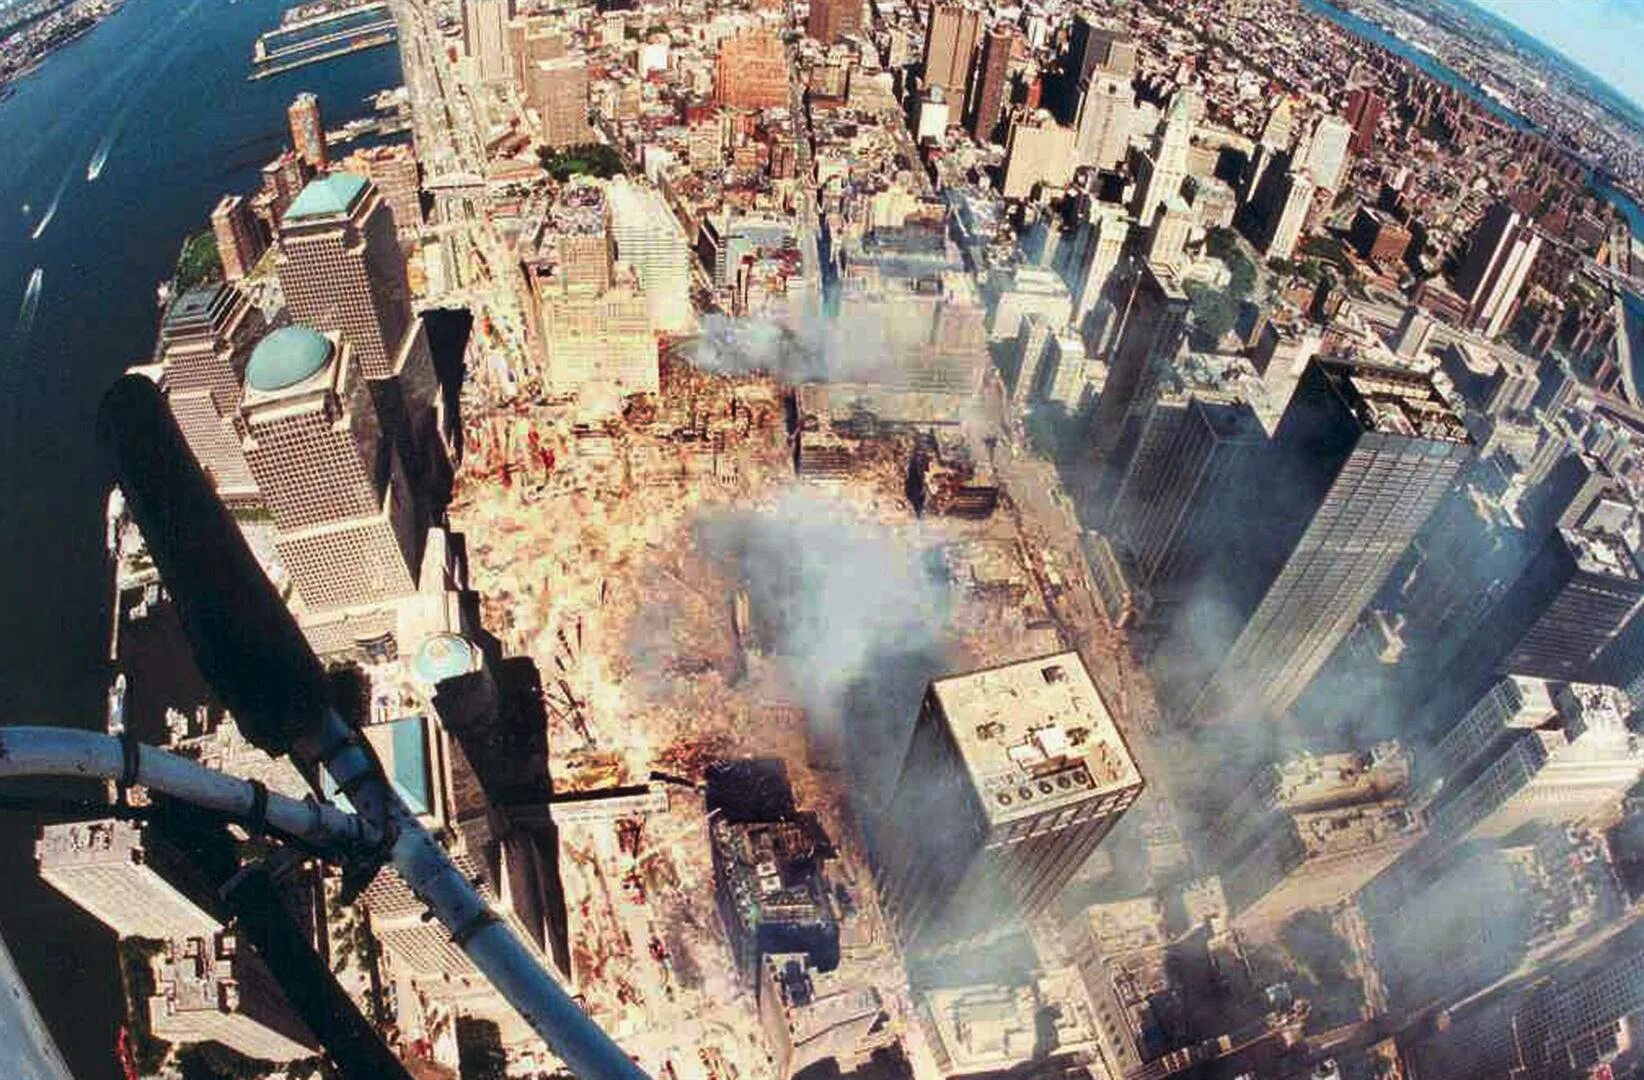 9 августа 2001. Башни-Близнецы 11 сентября 2001. Башни ВТЦ 11 сентября 2001. Всемирный торговый центр в Нью-Йорке башни Близнецы.